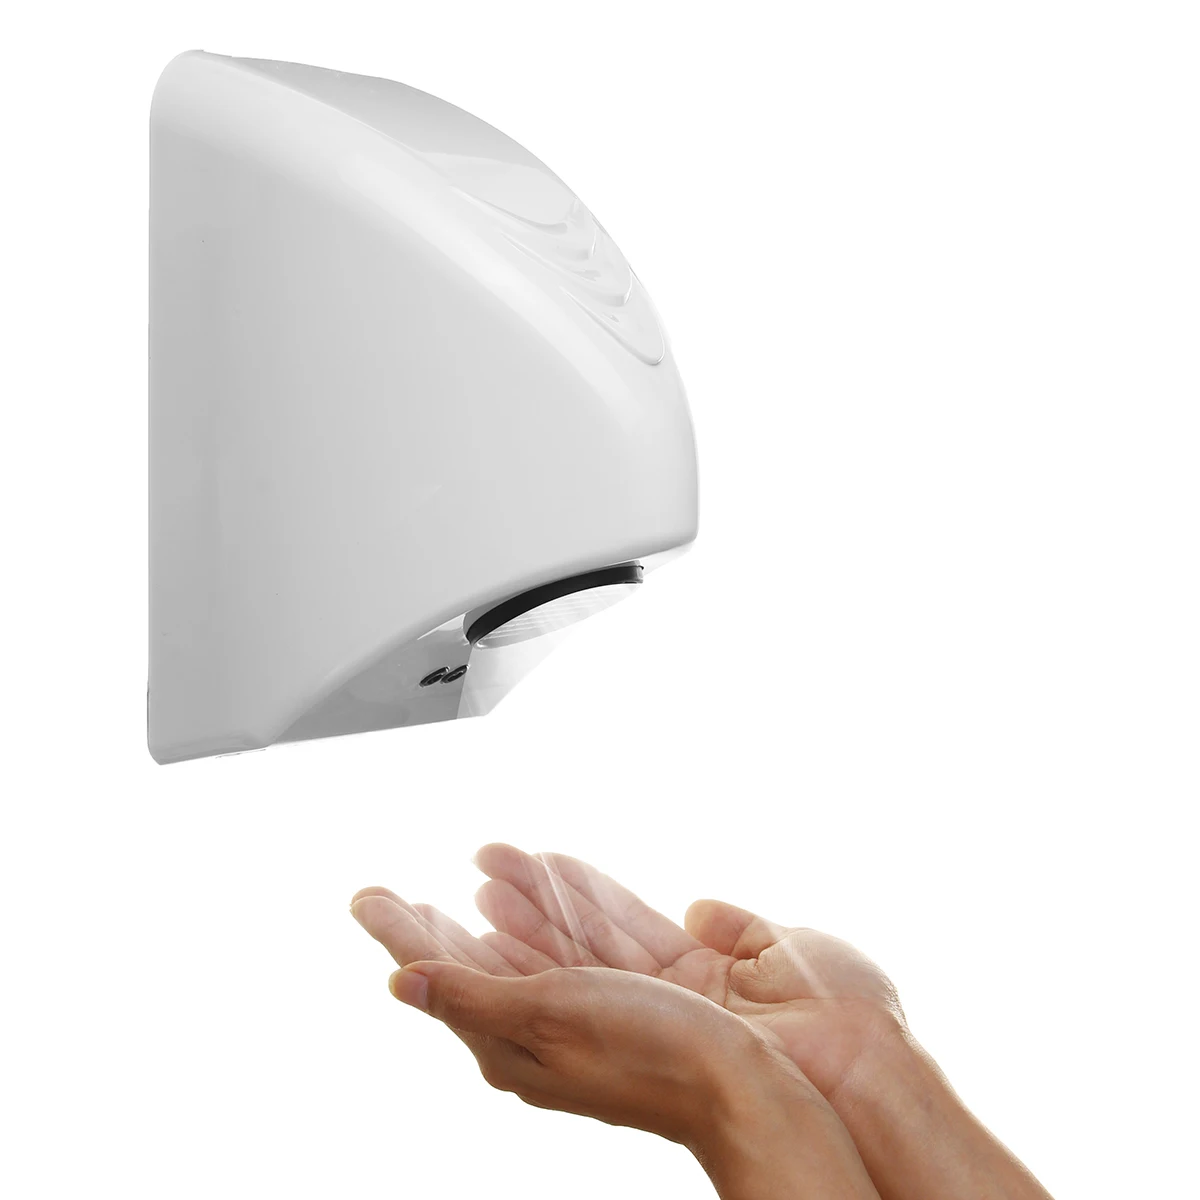 AUGIENB сушилка для рук 800 Вт отель для коммерческих помещений, сушилка для рук электрическая автоматическая индукция руки сушильное устройство бытовой техники